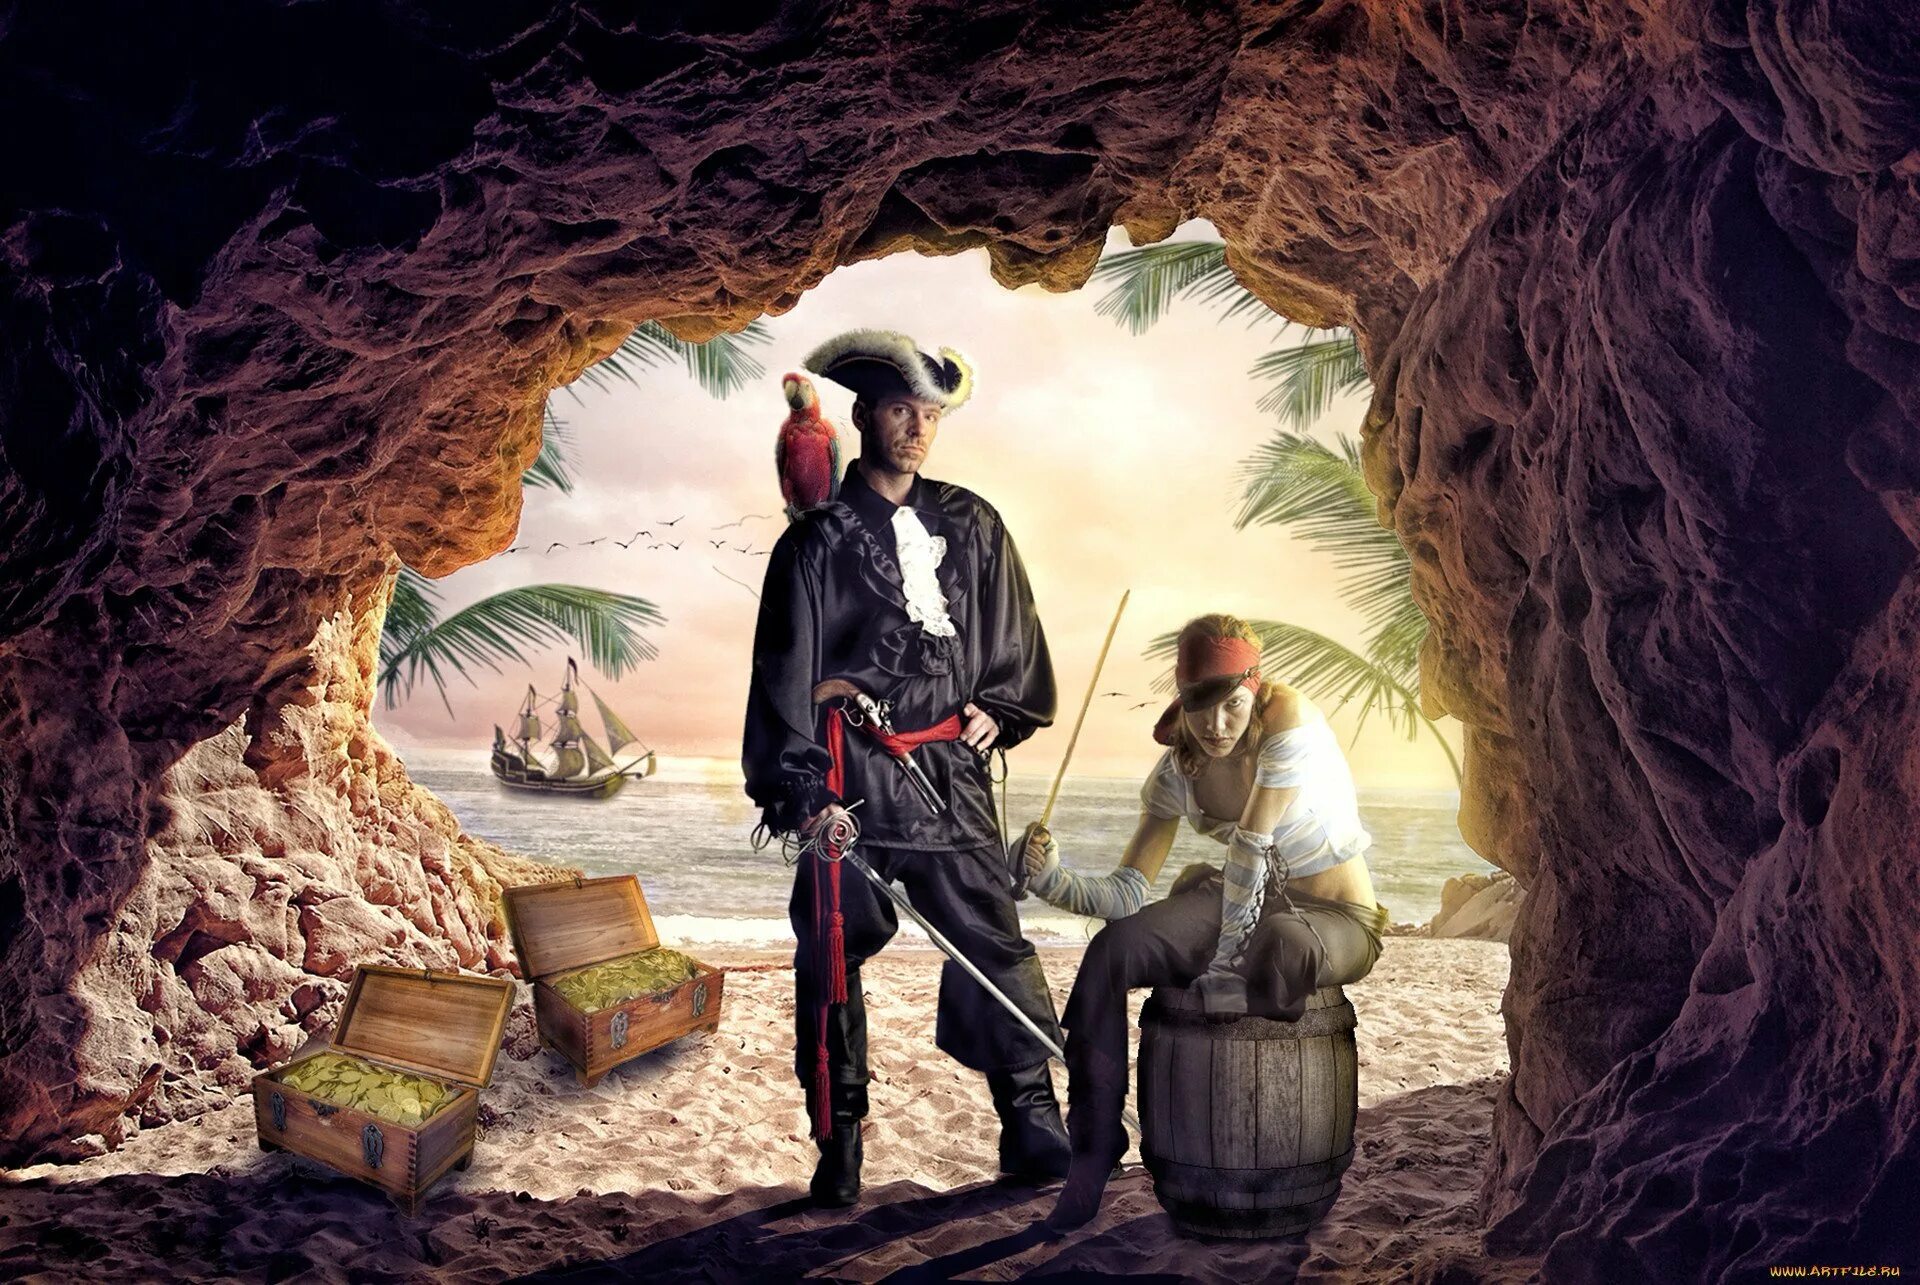 Пираты Карибского моря пещера сокровищ. Пираты Карибского моря остров сокровищ. Пираты на острове сокровищ. Остров сокровищ пираты клад.